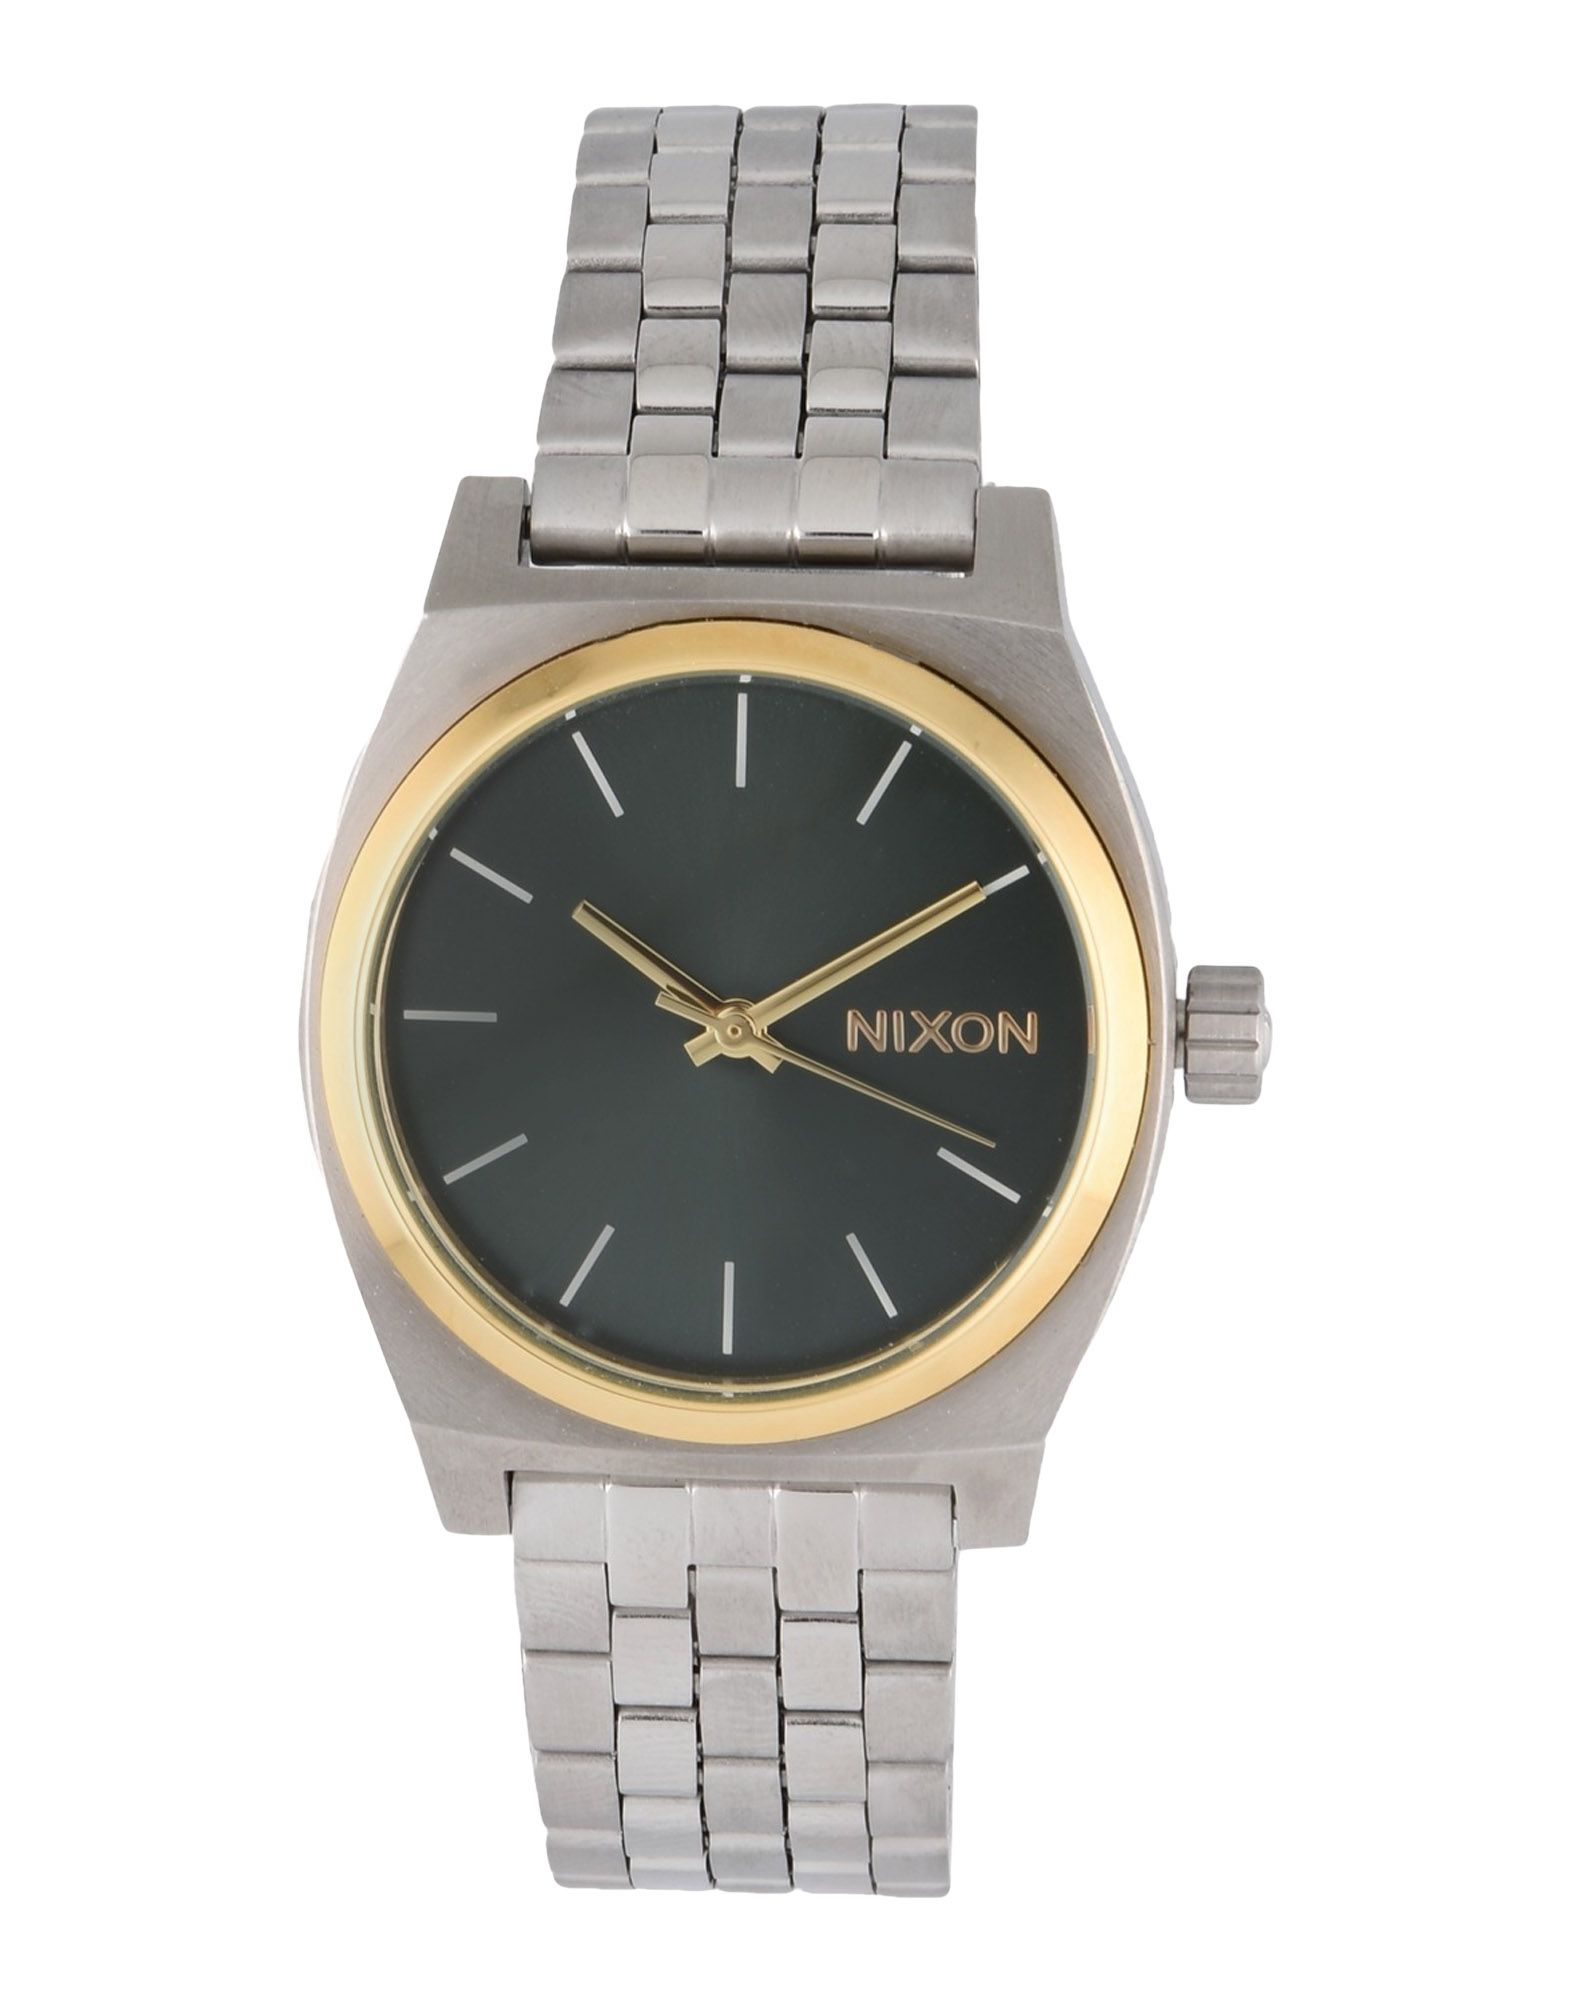 《送料無料》NIXON Unisex 腕時計 シルバー ステンレススチール A1130 MEDIUM TIME TELLER